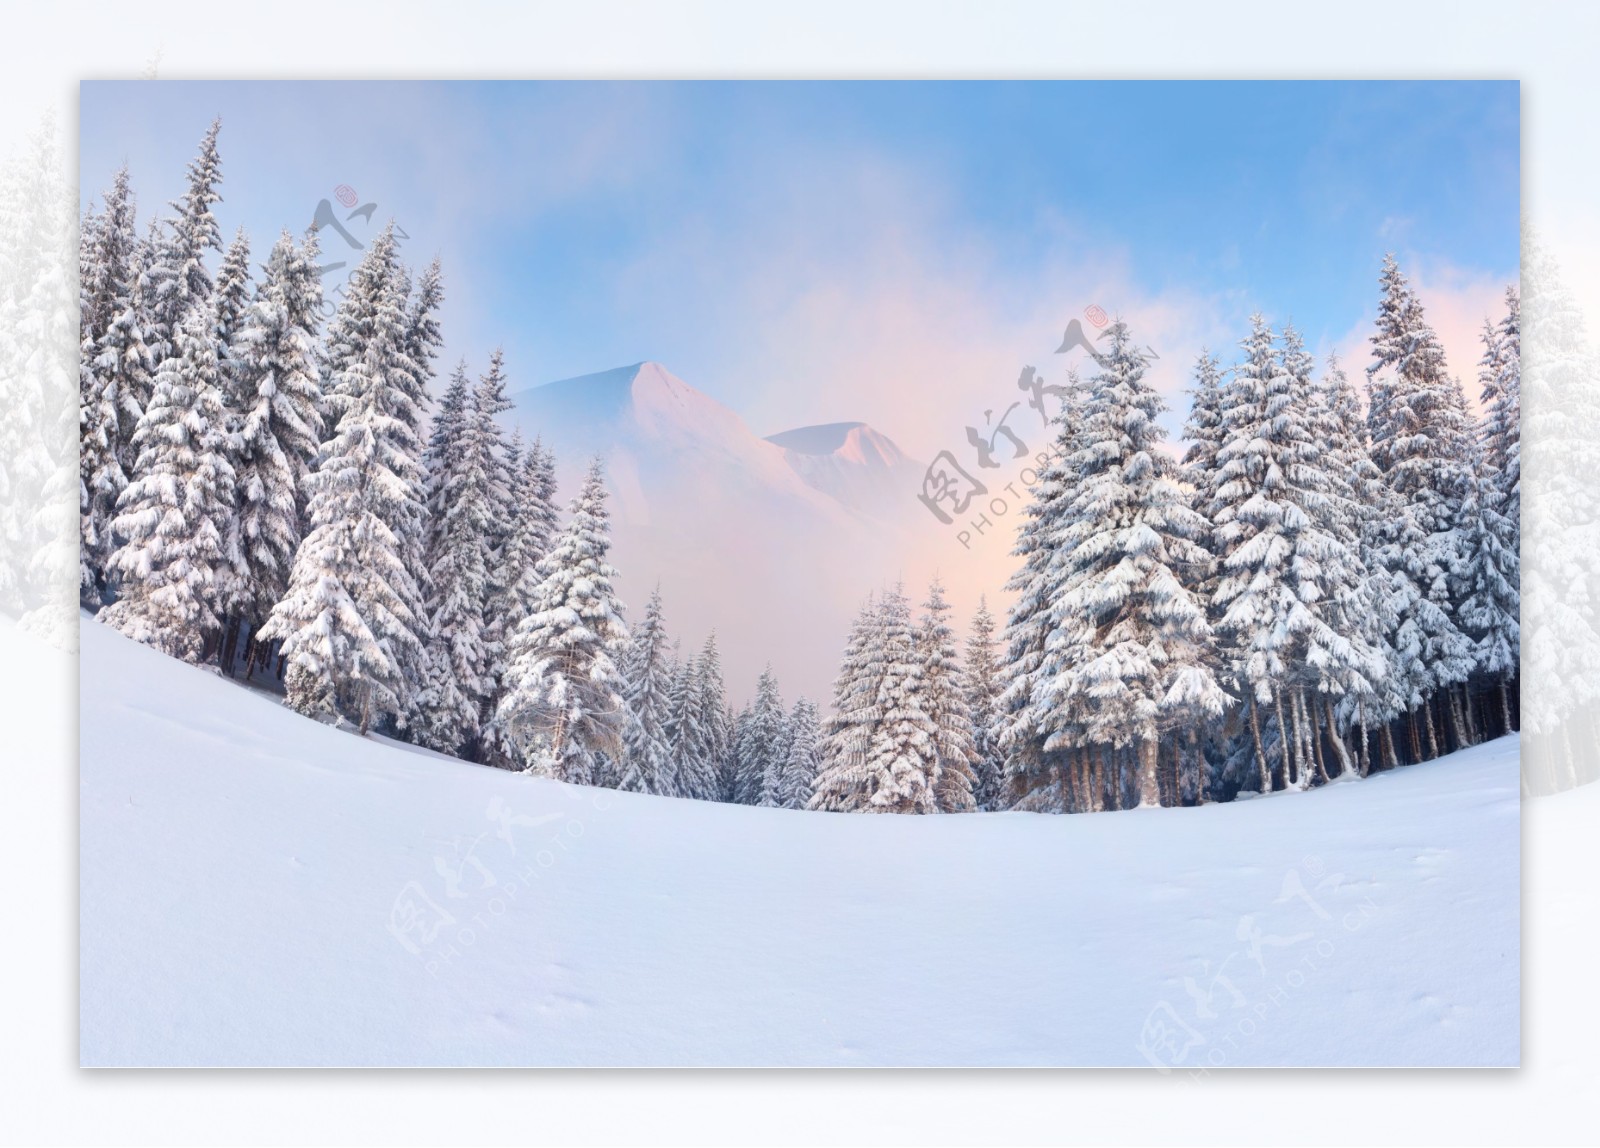 美丽冬天雪地风景图片